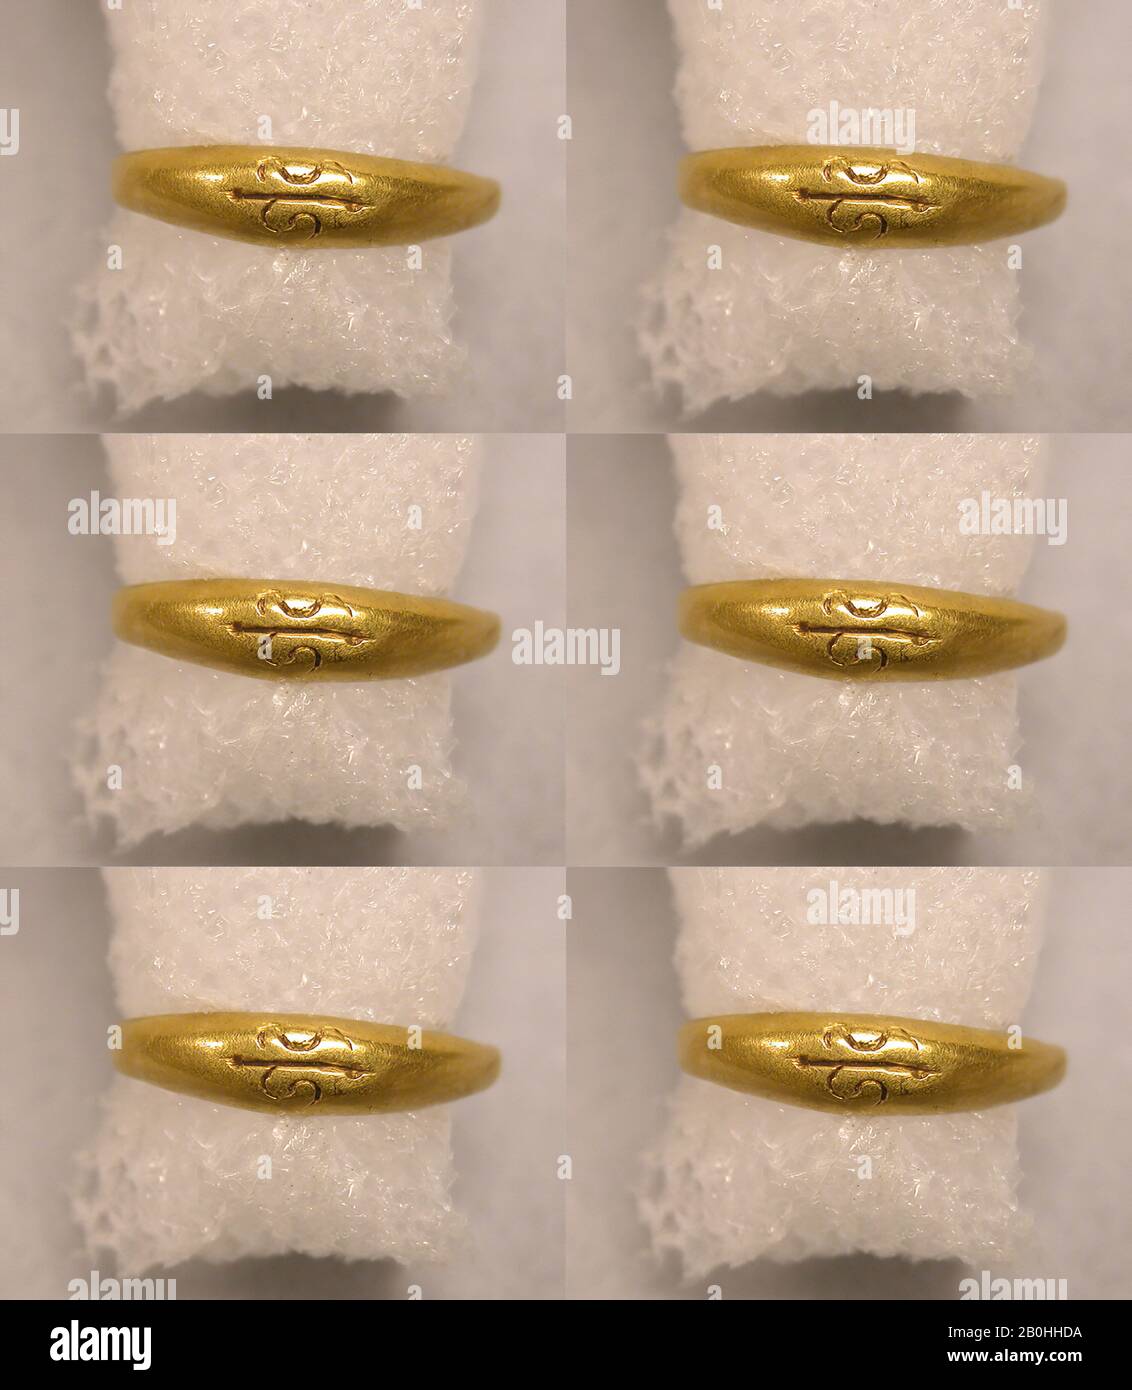 Graviert Ring, Indonesien (Zentraljava), 8. Bis 12. Jahrhundert, Indonesien  (Zentraljava), Gold, Diam. 11/16 Zoll (1,8 cm), Schmuck Stockfotografie -  Alamy